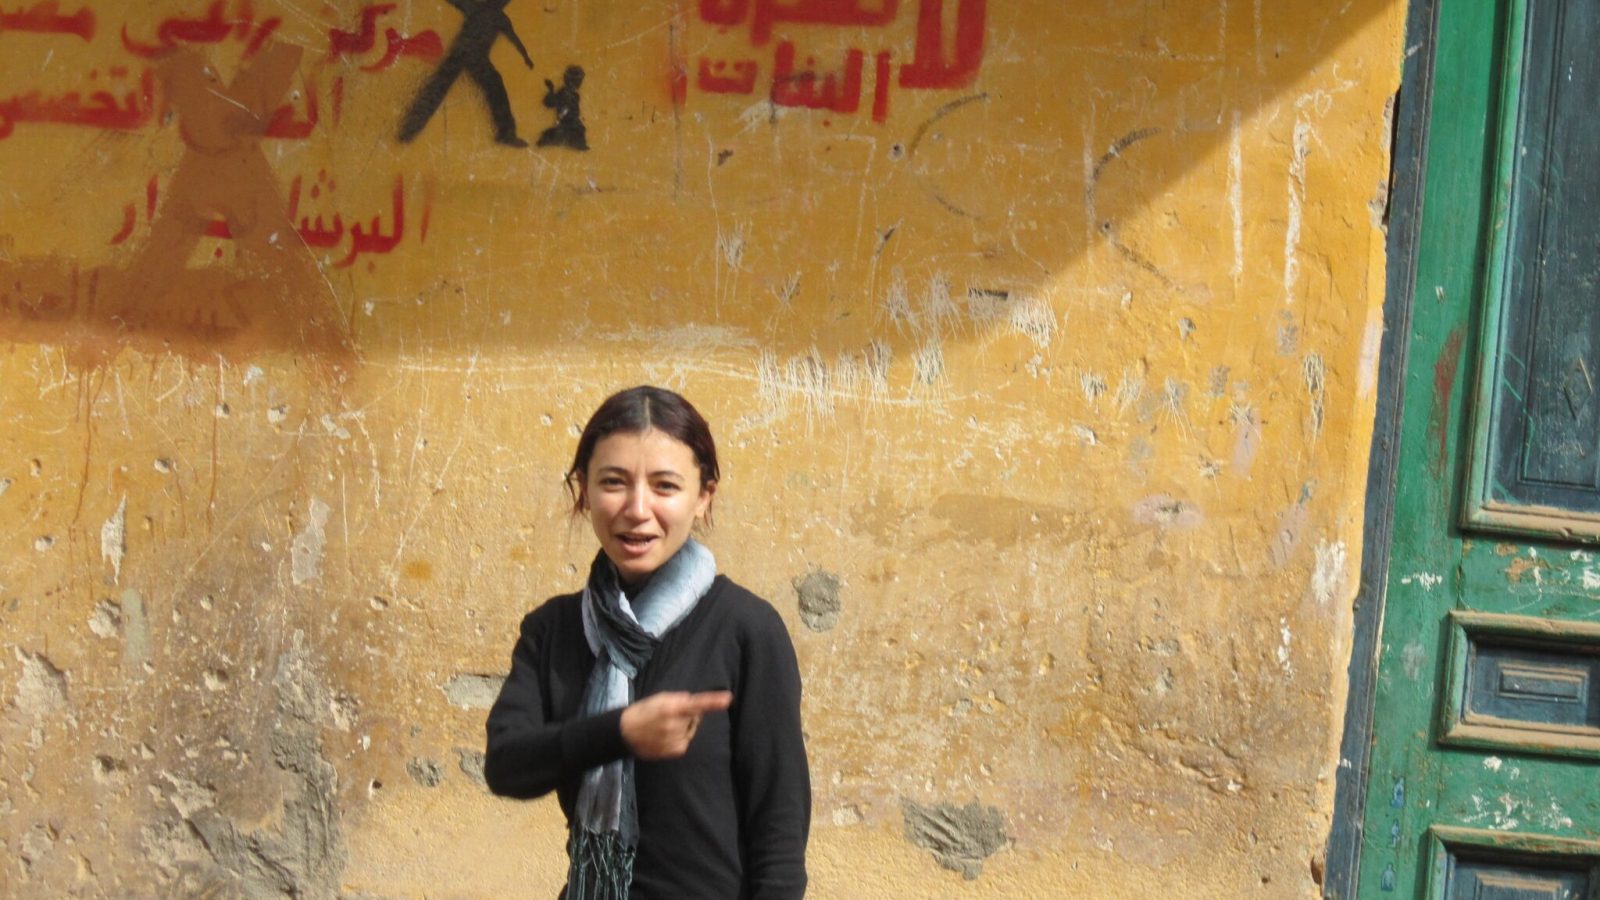  يوستينا، وفي خلفها كتابة على الجدران للجمعية : لا للعنف ضد الفتيات!